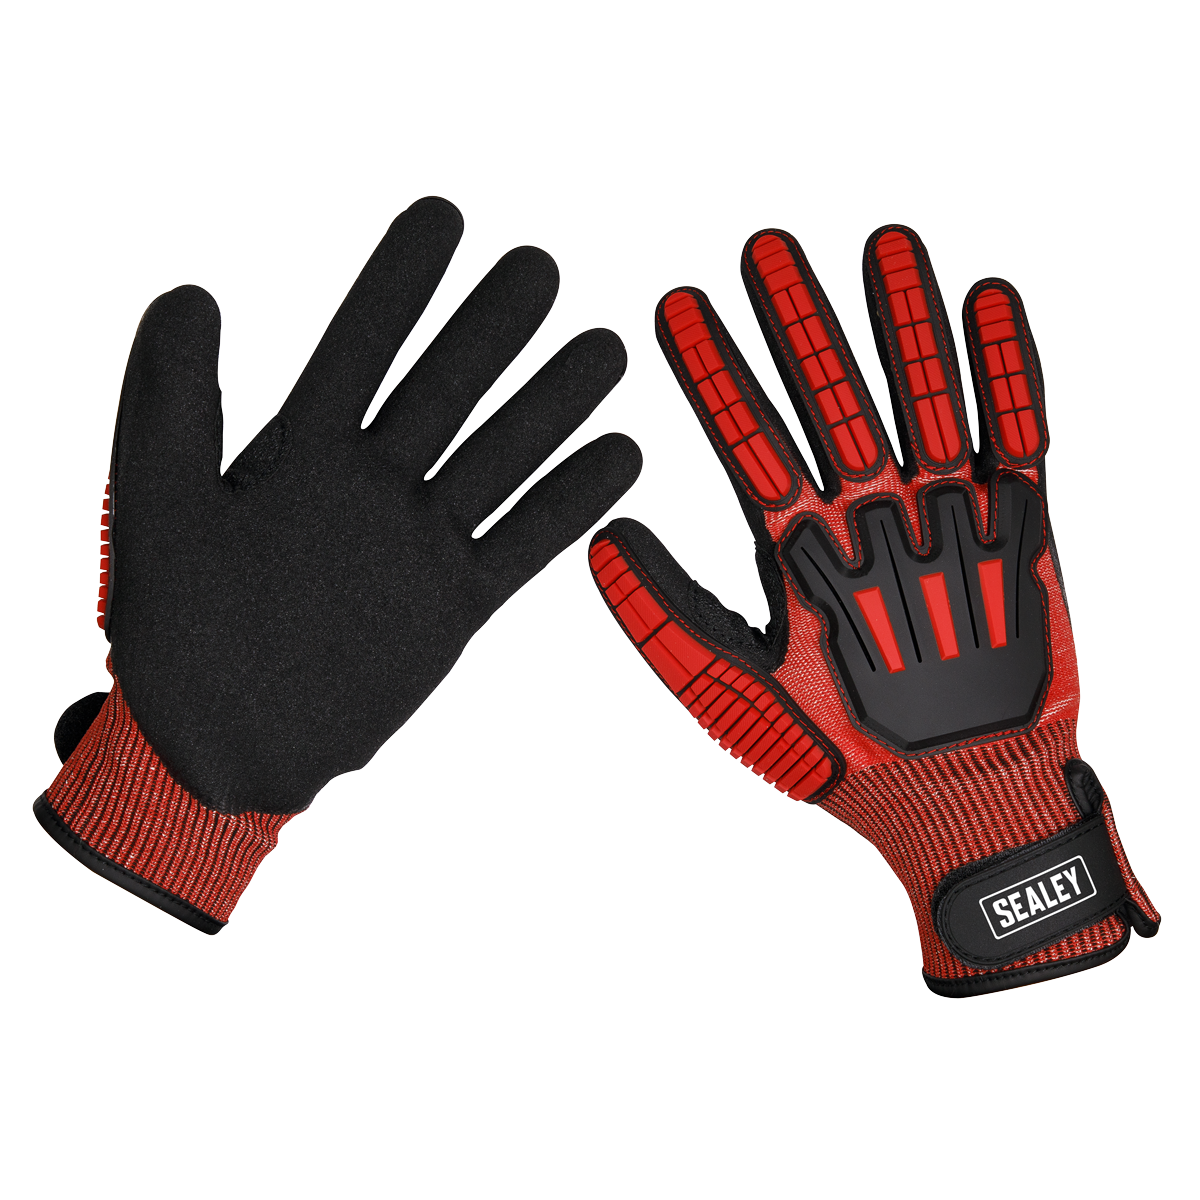 Cut & Impact Resistant Gloves - X-Large - Pair - SSP38XL - Farming Parts